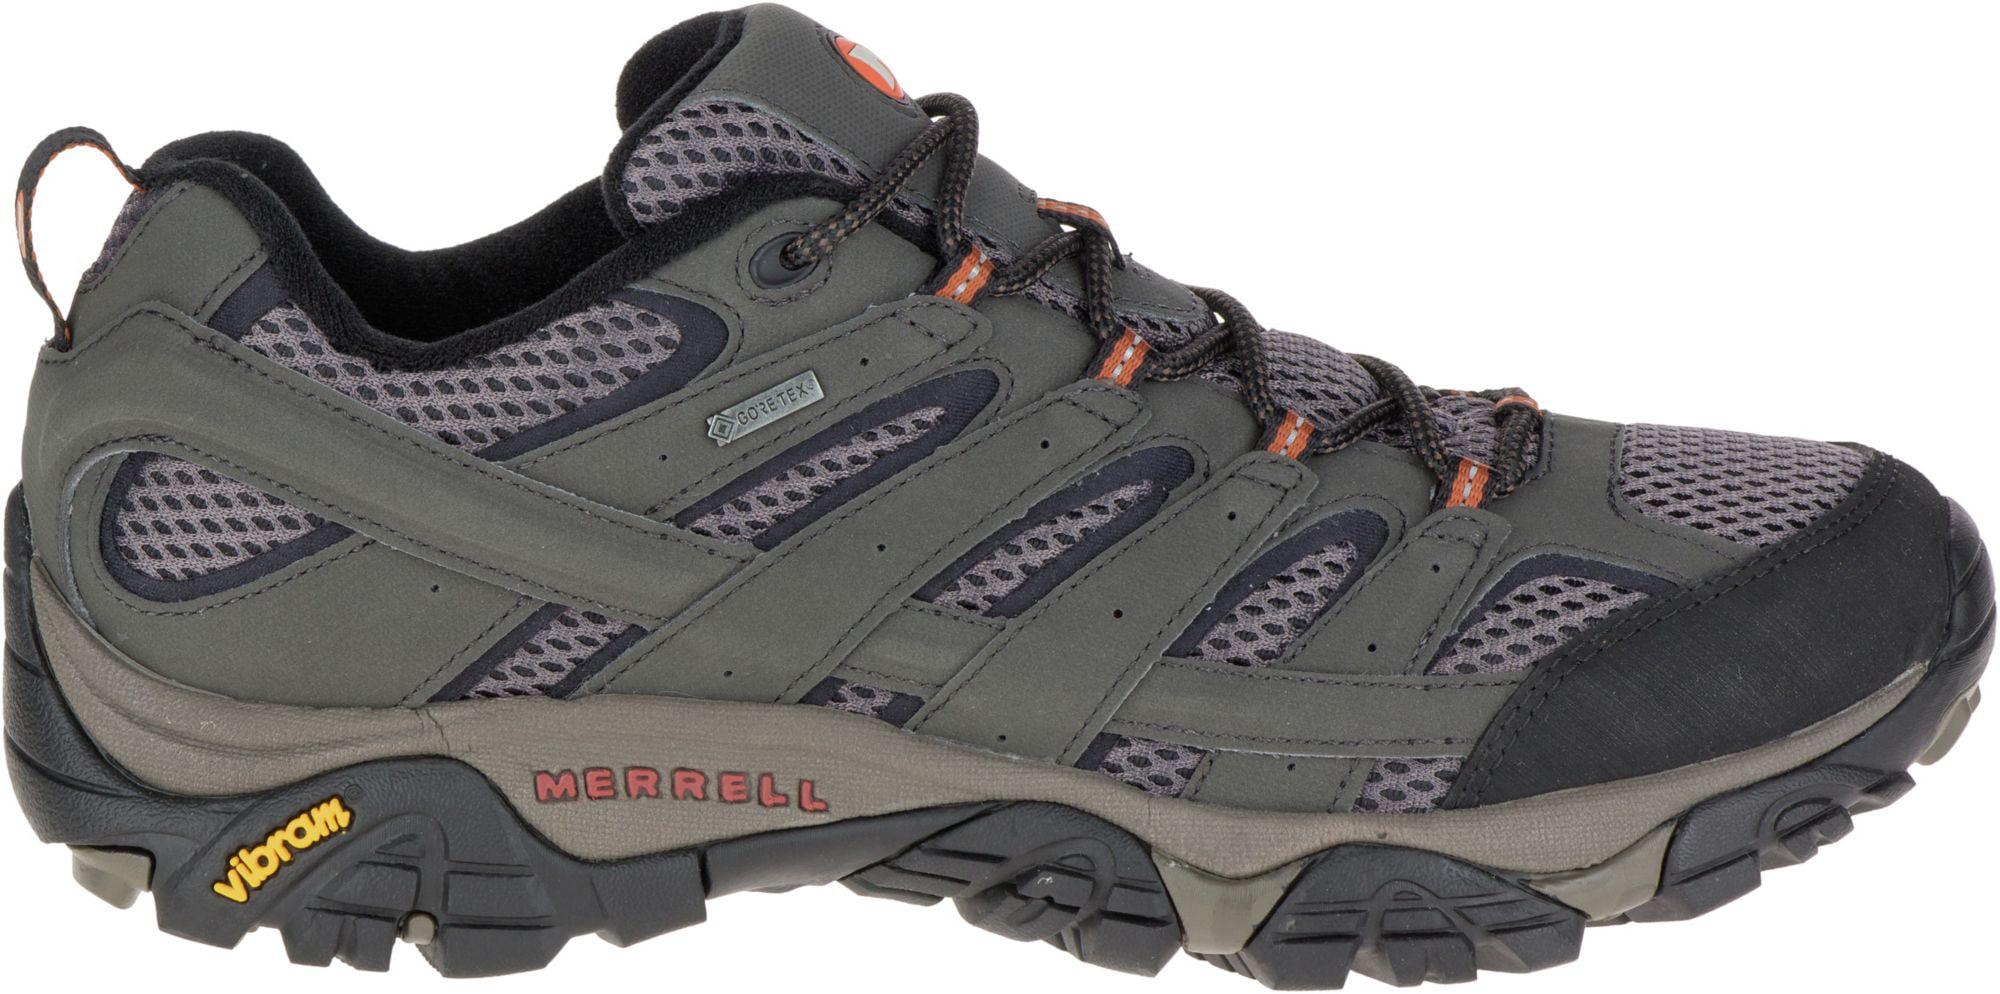 Merrell - Men's Merrell Moab 2 GORE-TEX Hiking Shoe - Walmart.com ...